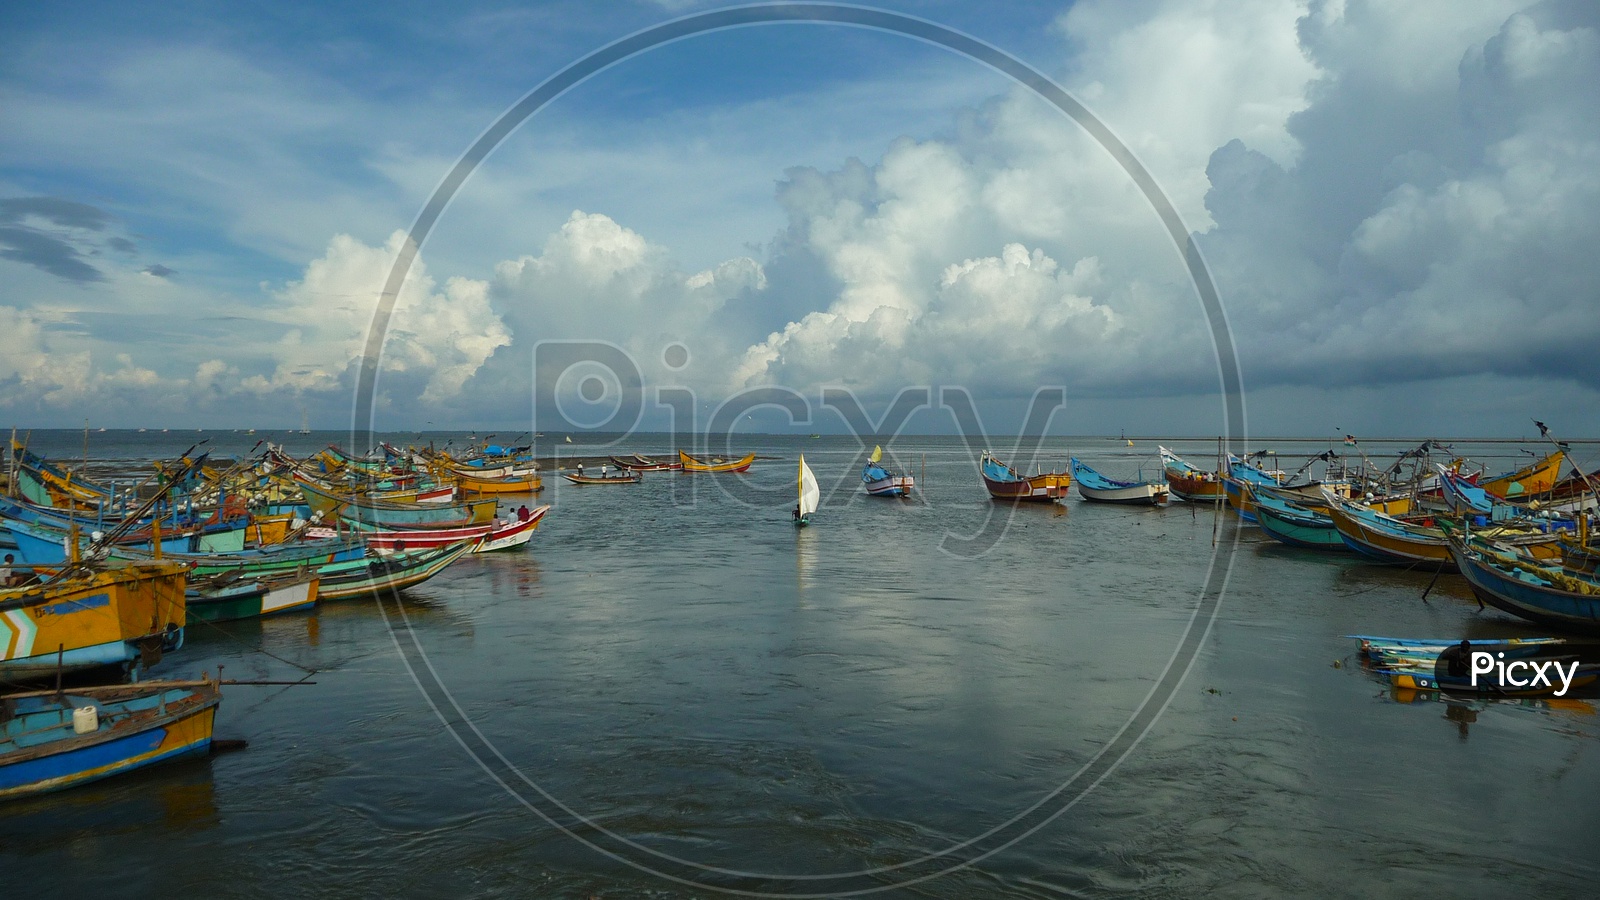 Boats at Kakinada